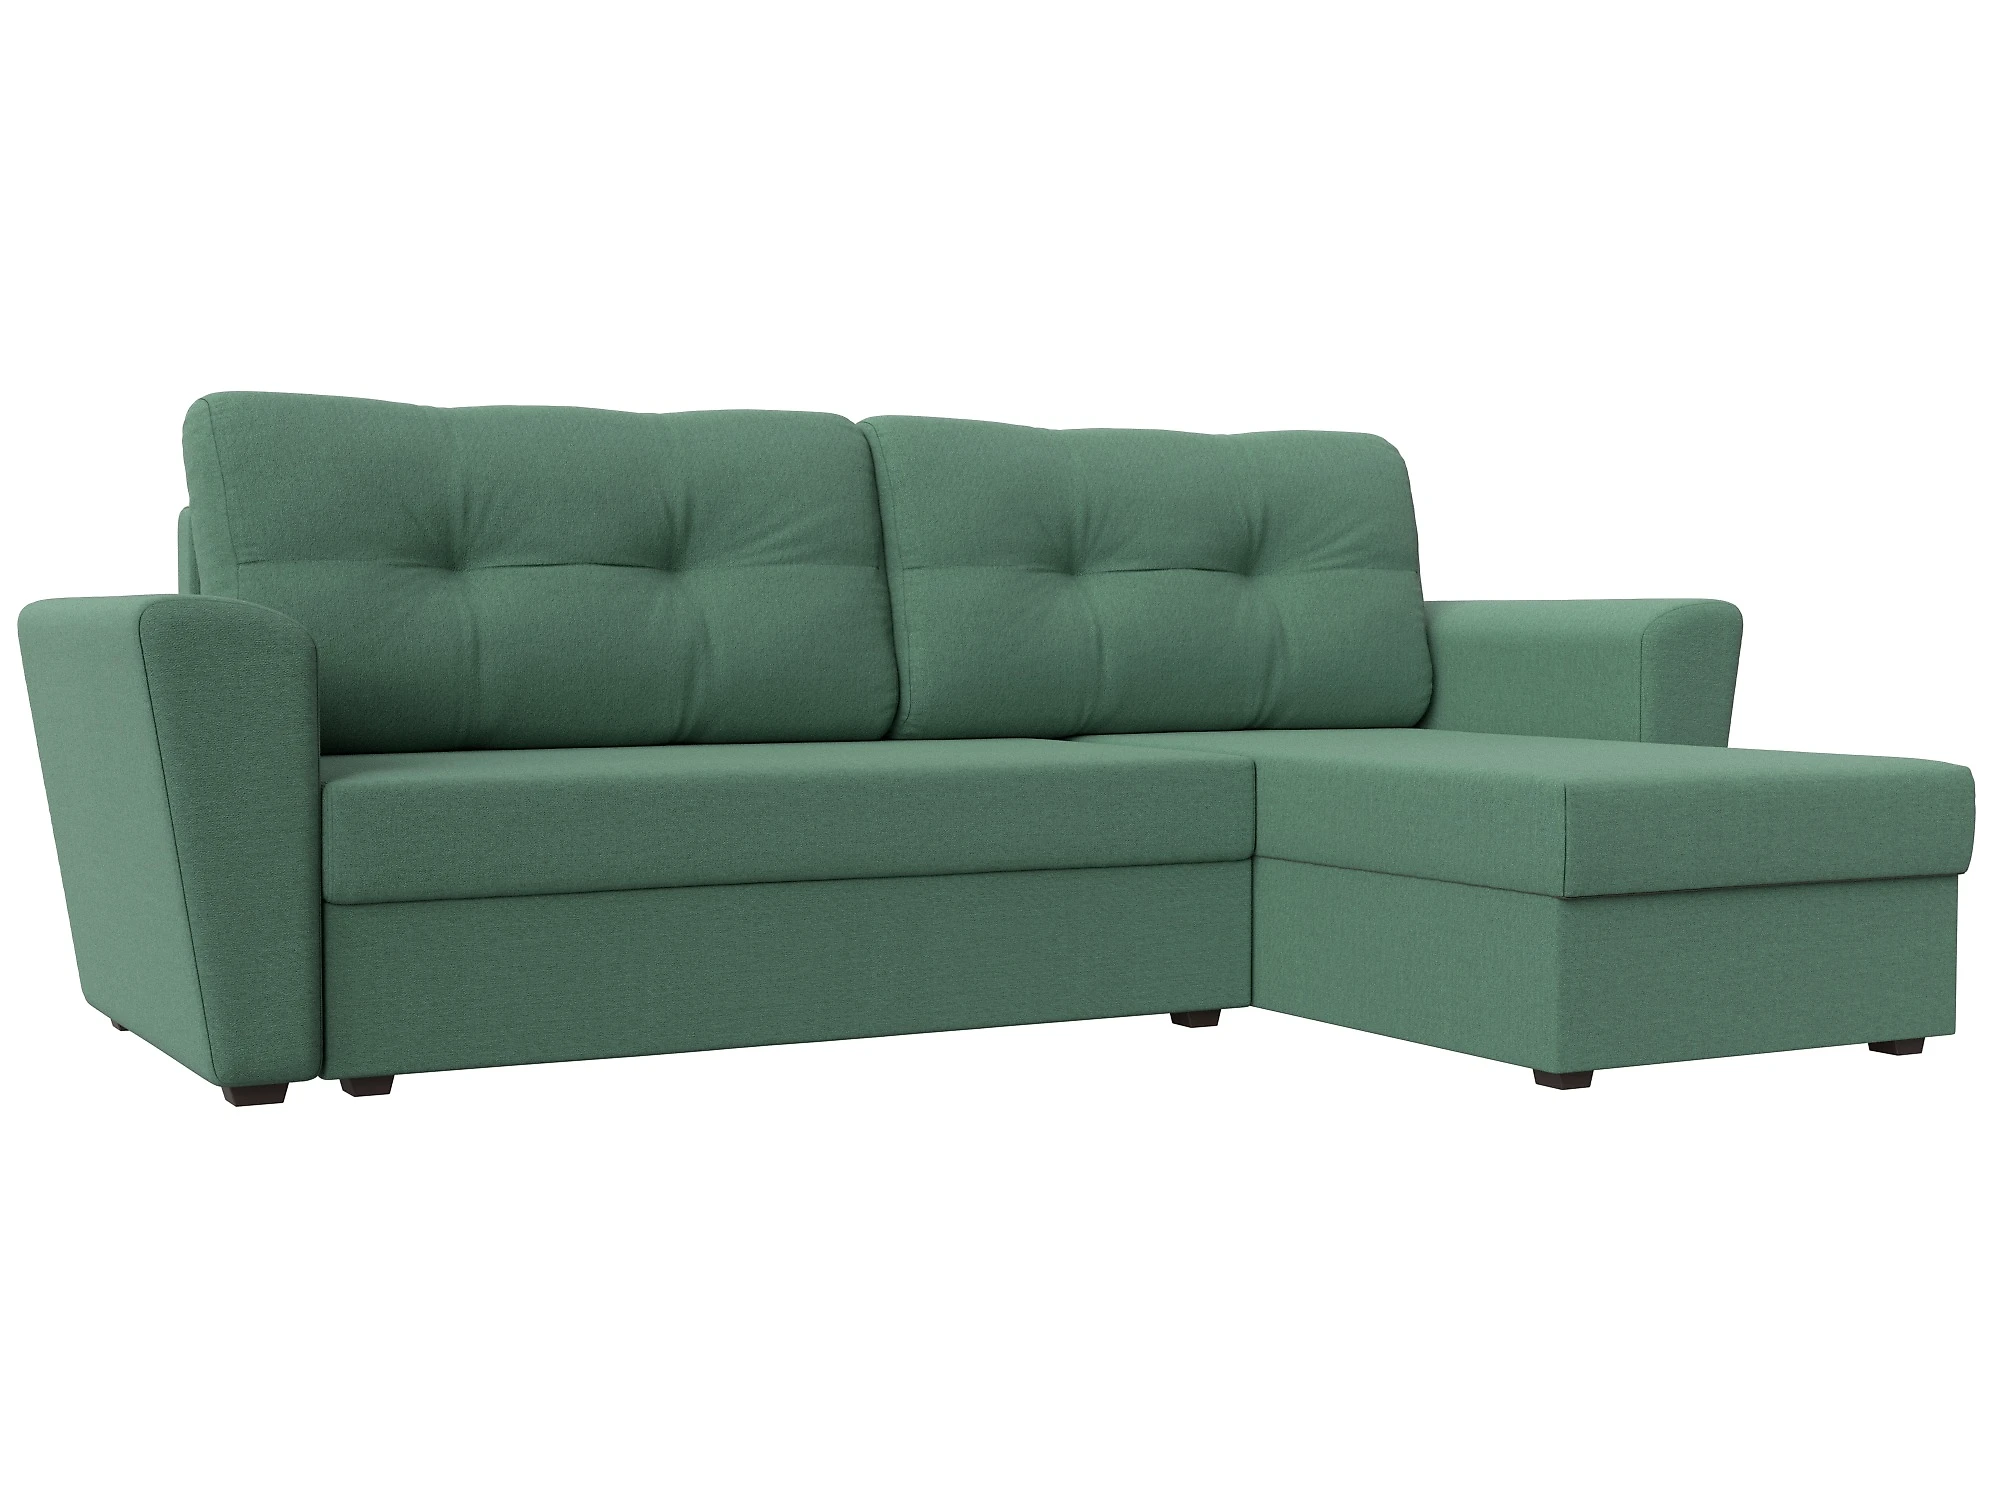  угловой диван из рогожки Амстердам Лайт Дизайн 14